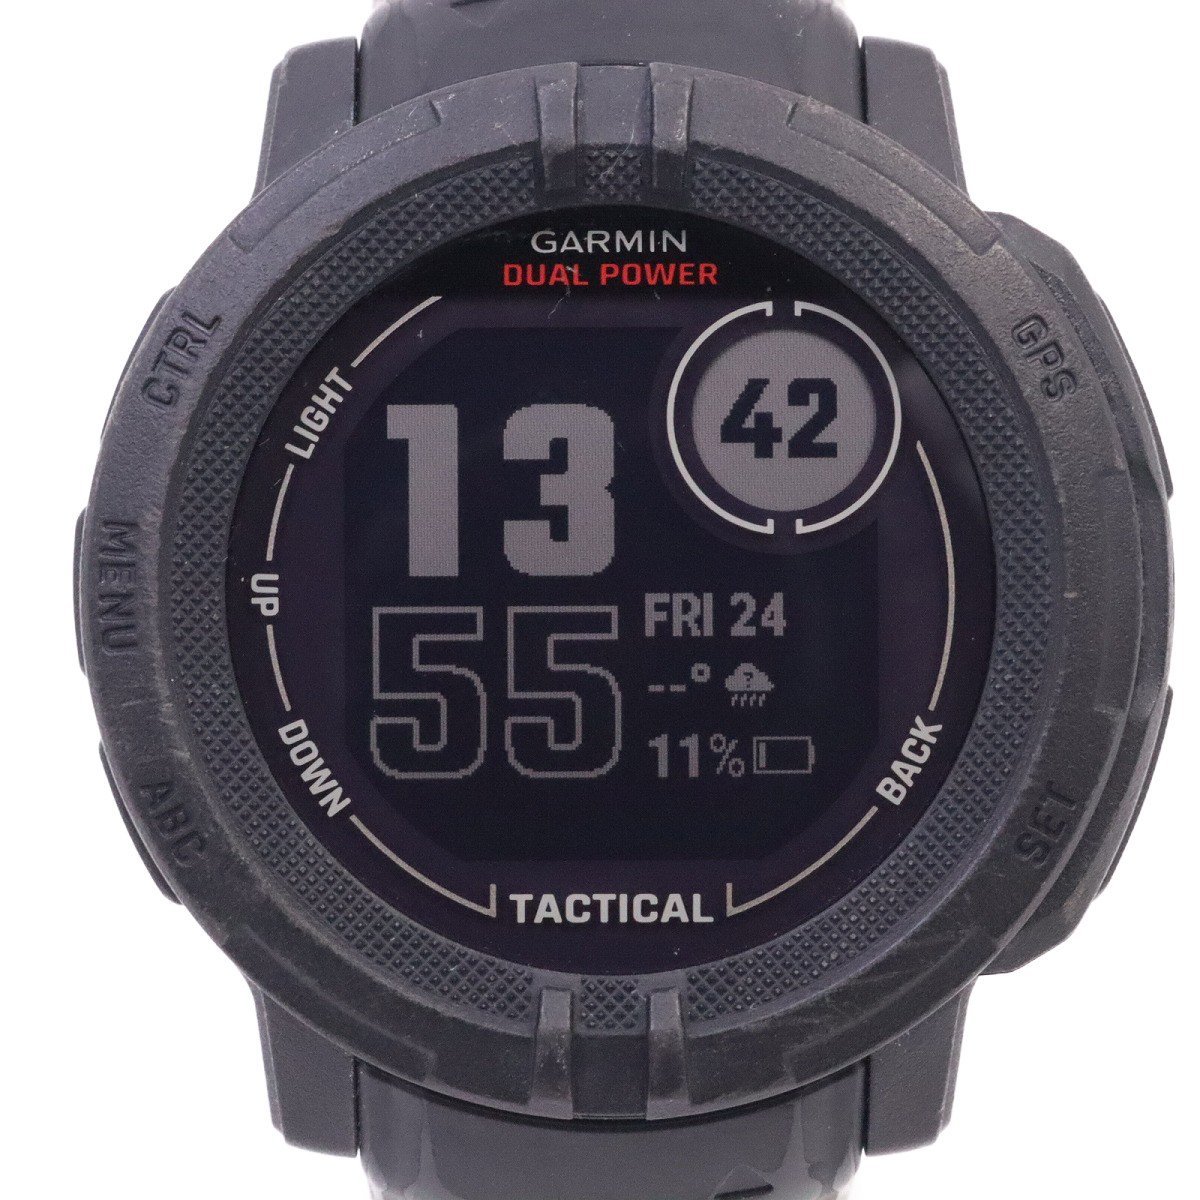 GARMIN ガーミン INSTINCT 2 DUAL POWER TACTICAL EDITION タフネスGPSウォッチ メンズ 腕時計 ブラック【いおき質店】_画像1